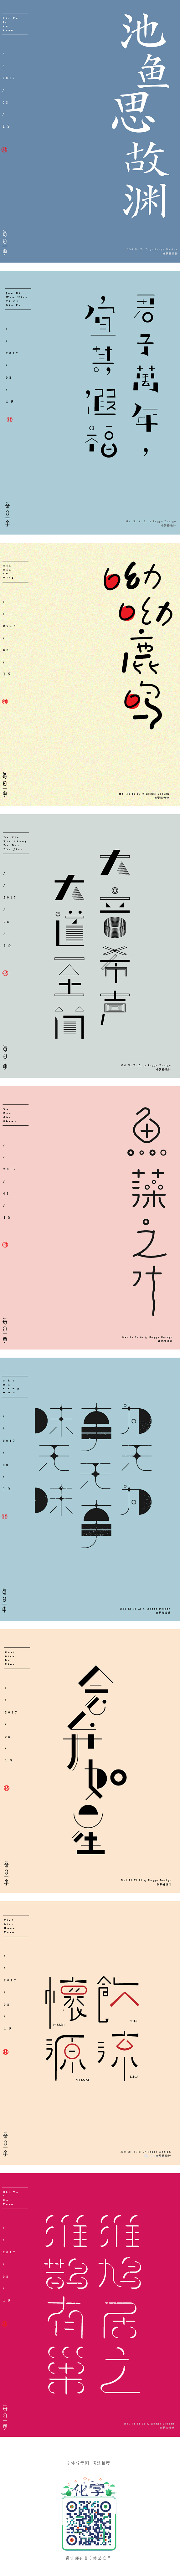 罗格设计/8月原创字体-字体传奇网-中国...